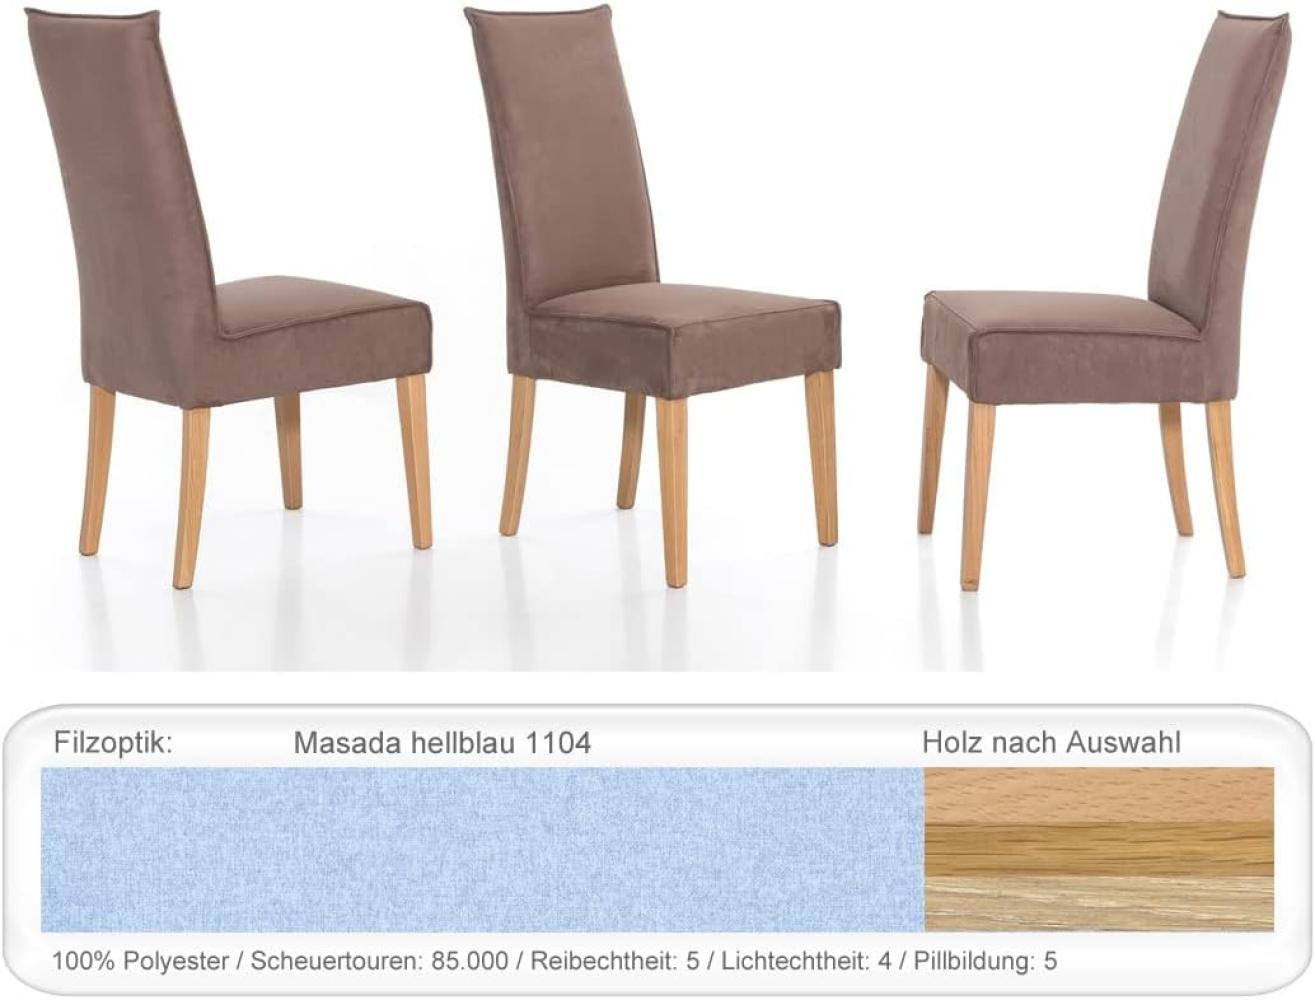 4x Polsterstuhl Kiana Varianten Esszimmerstuhl Küchenstuhl Massivholzstuhl Eiche natur lackiert, Masada hellblau Bild 1